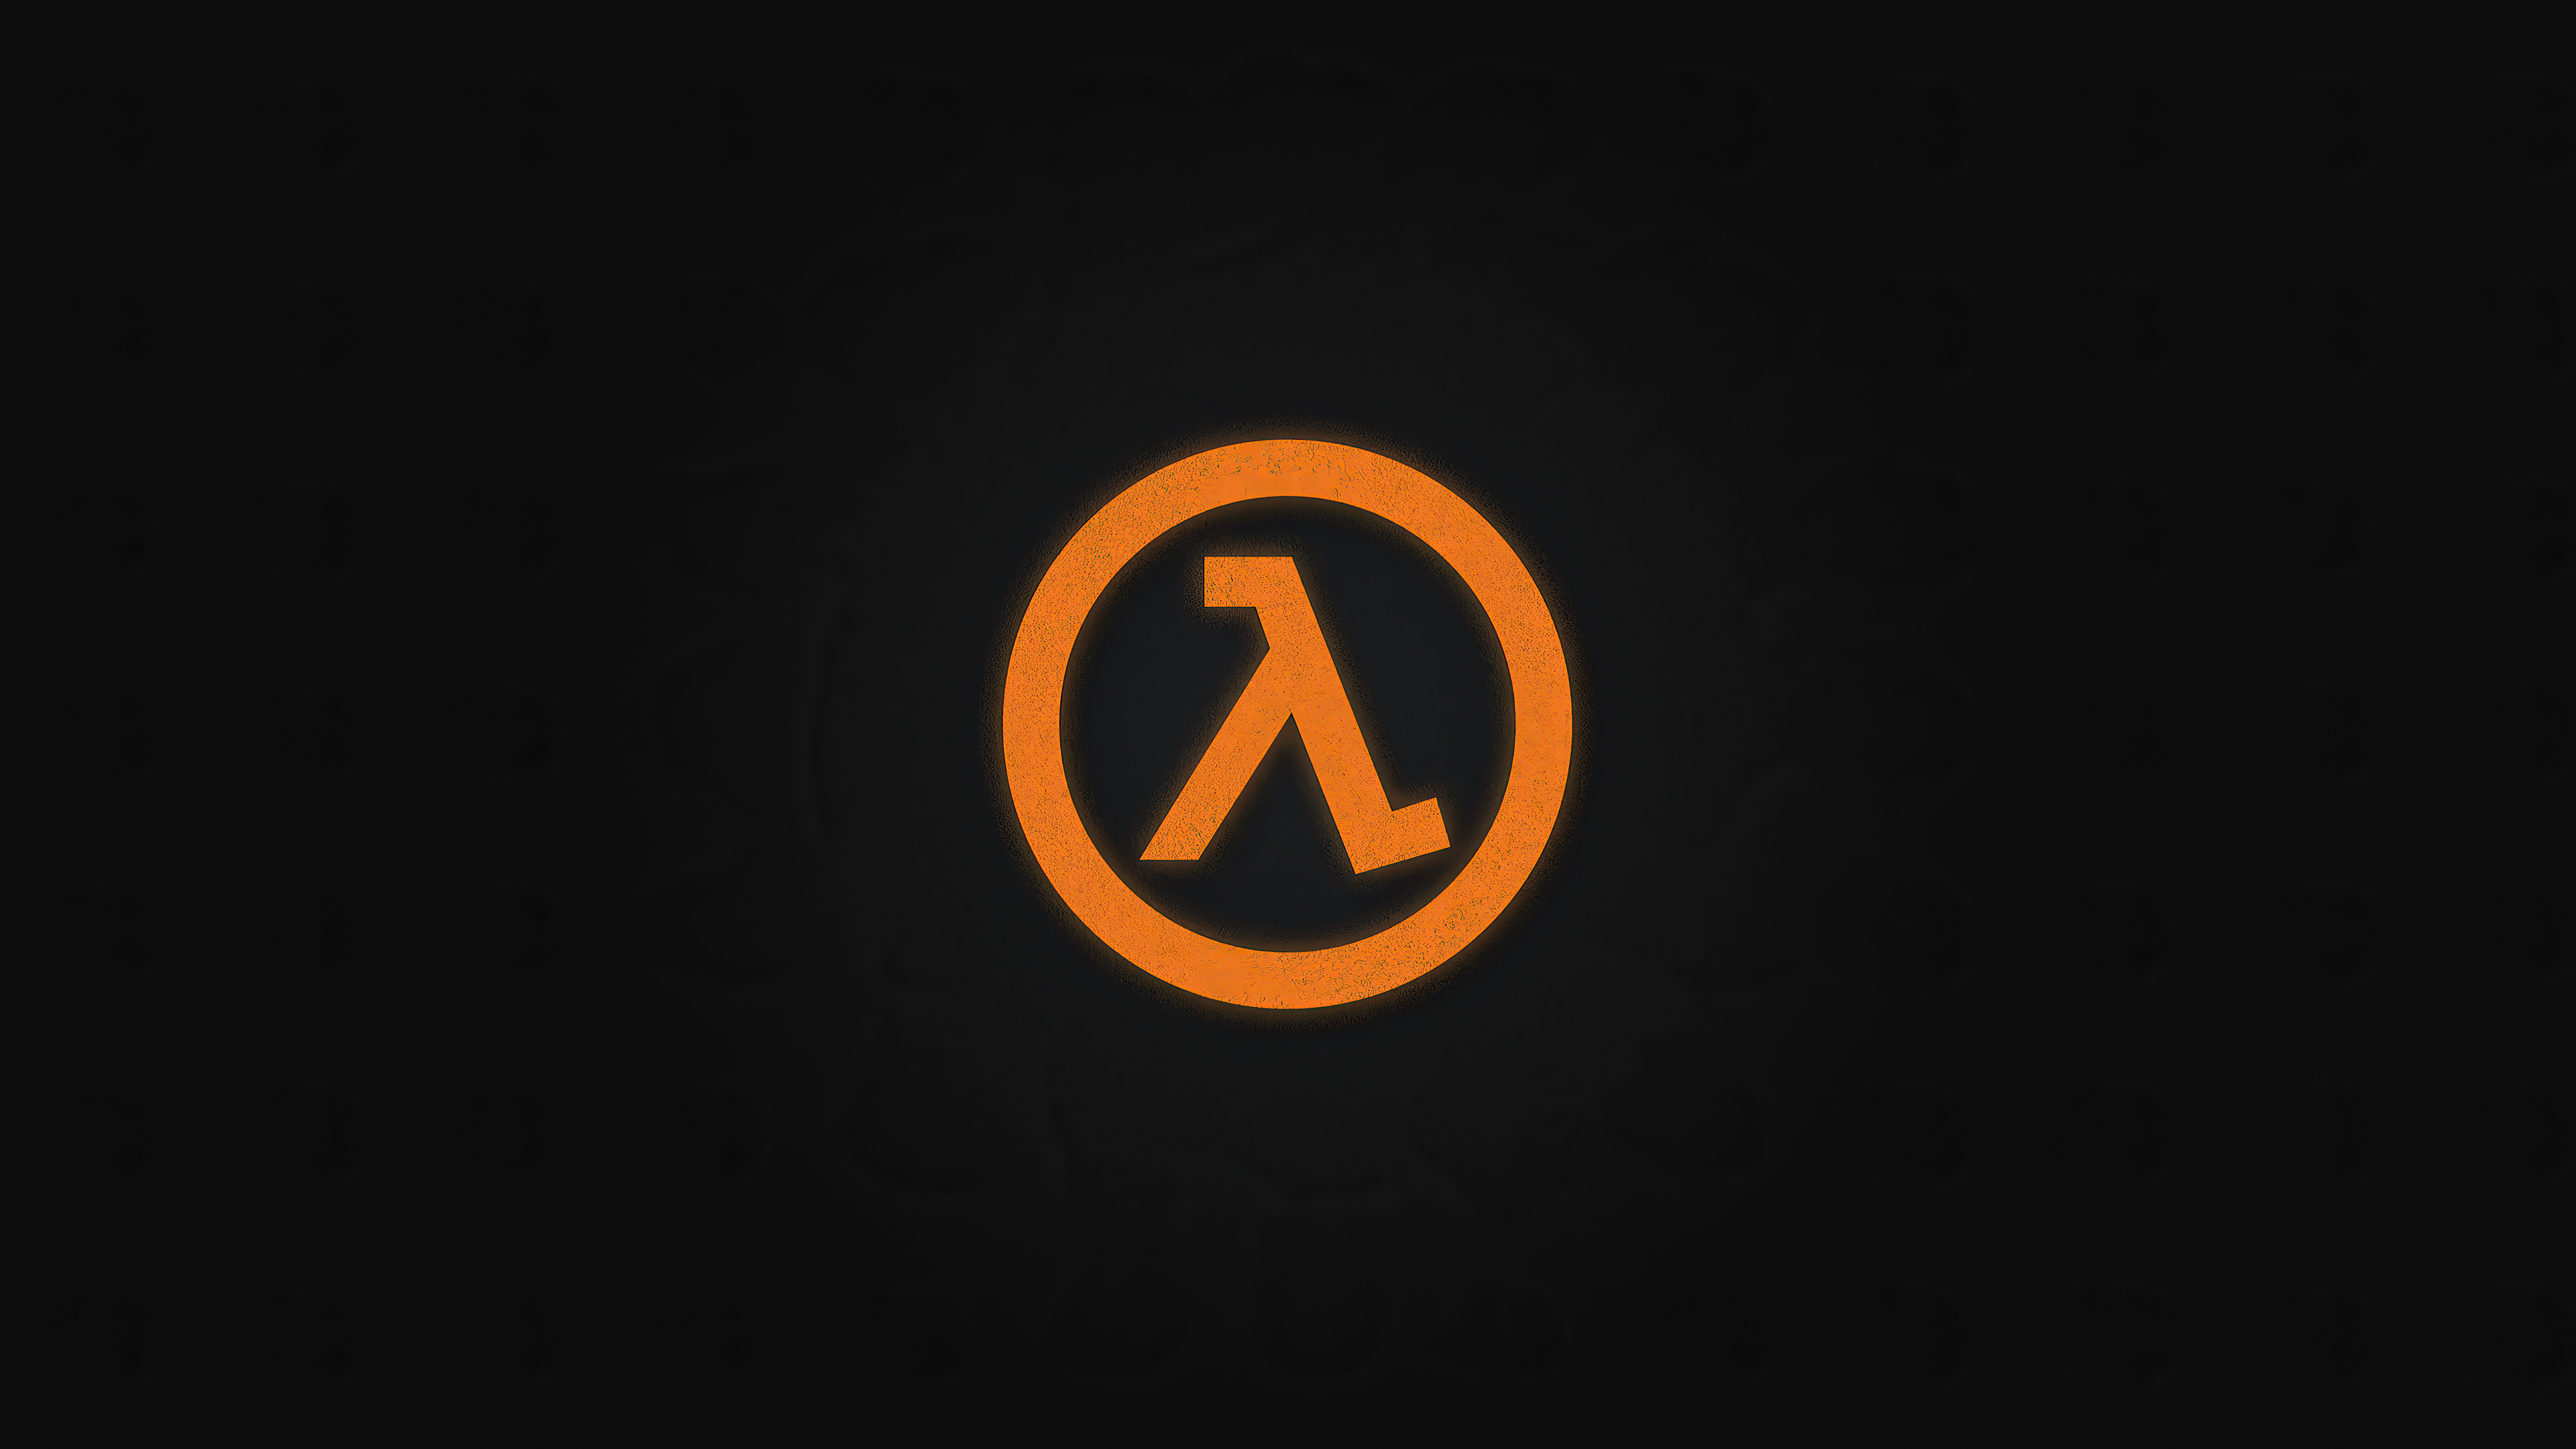 Half Life Logo Wallpaper